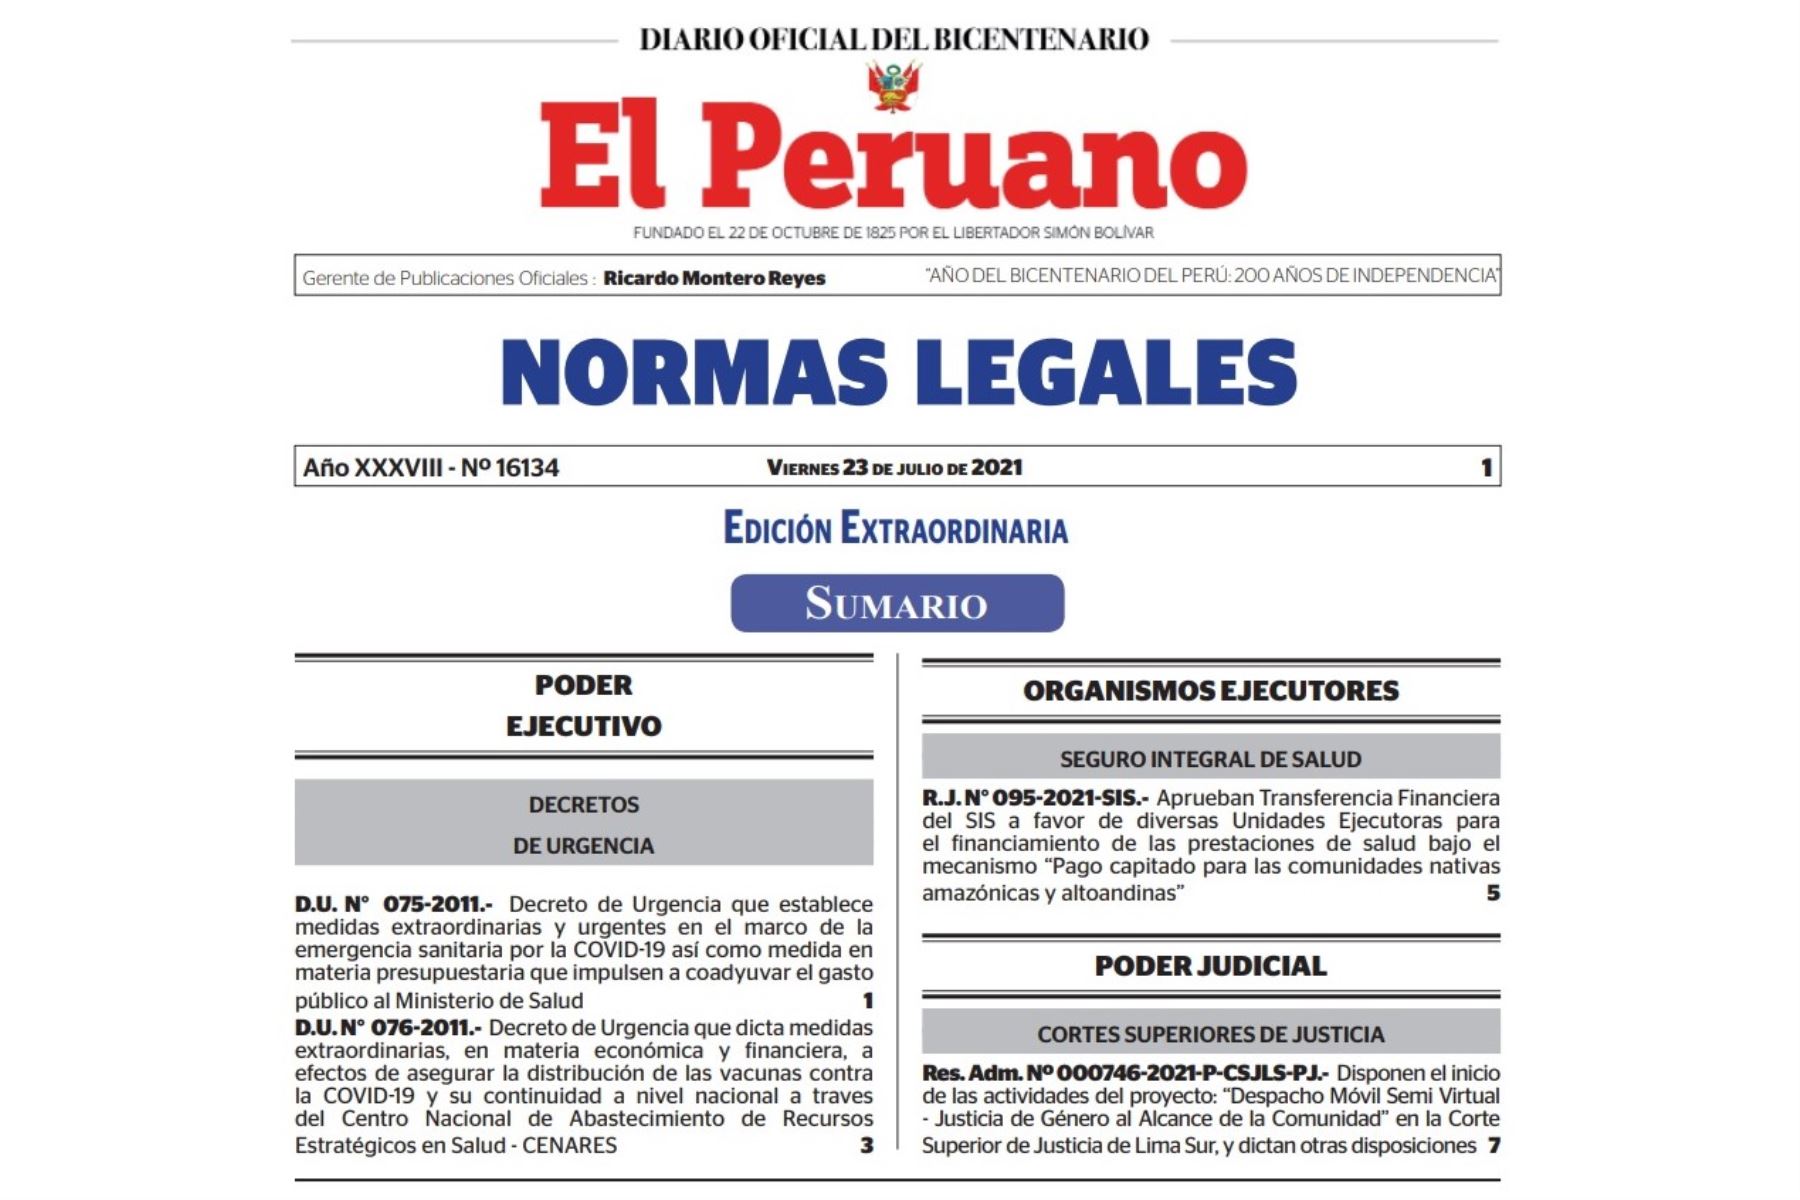 Cuadernillo de Normas Legales del Diario Oficial El Peruano.